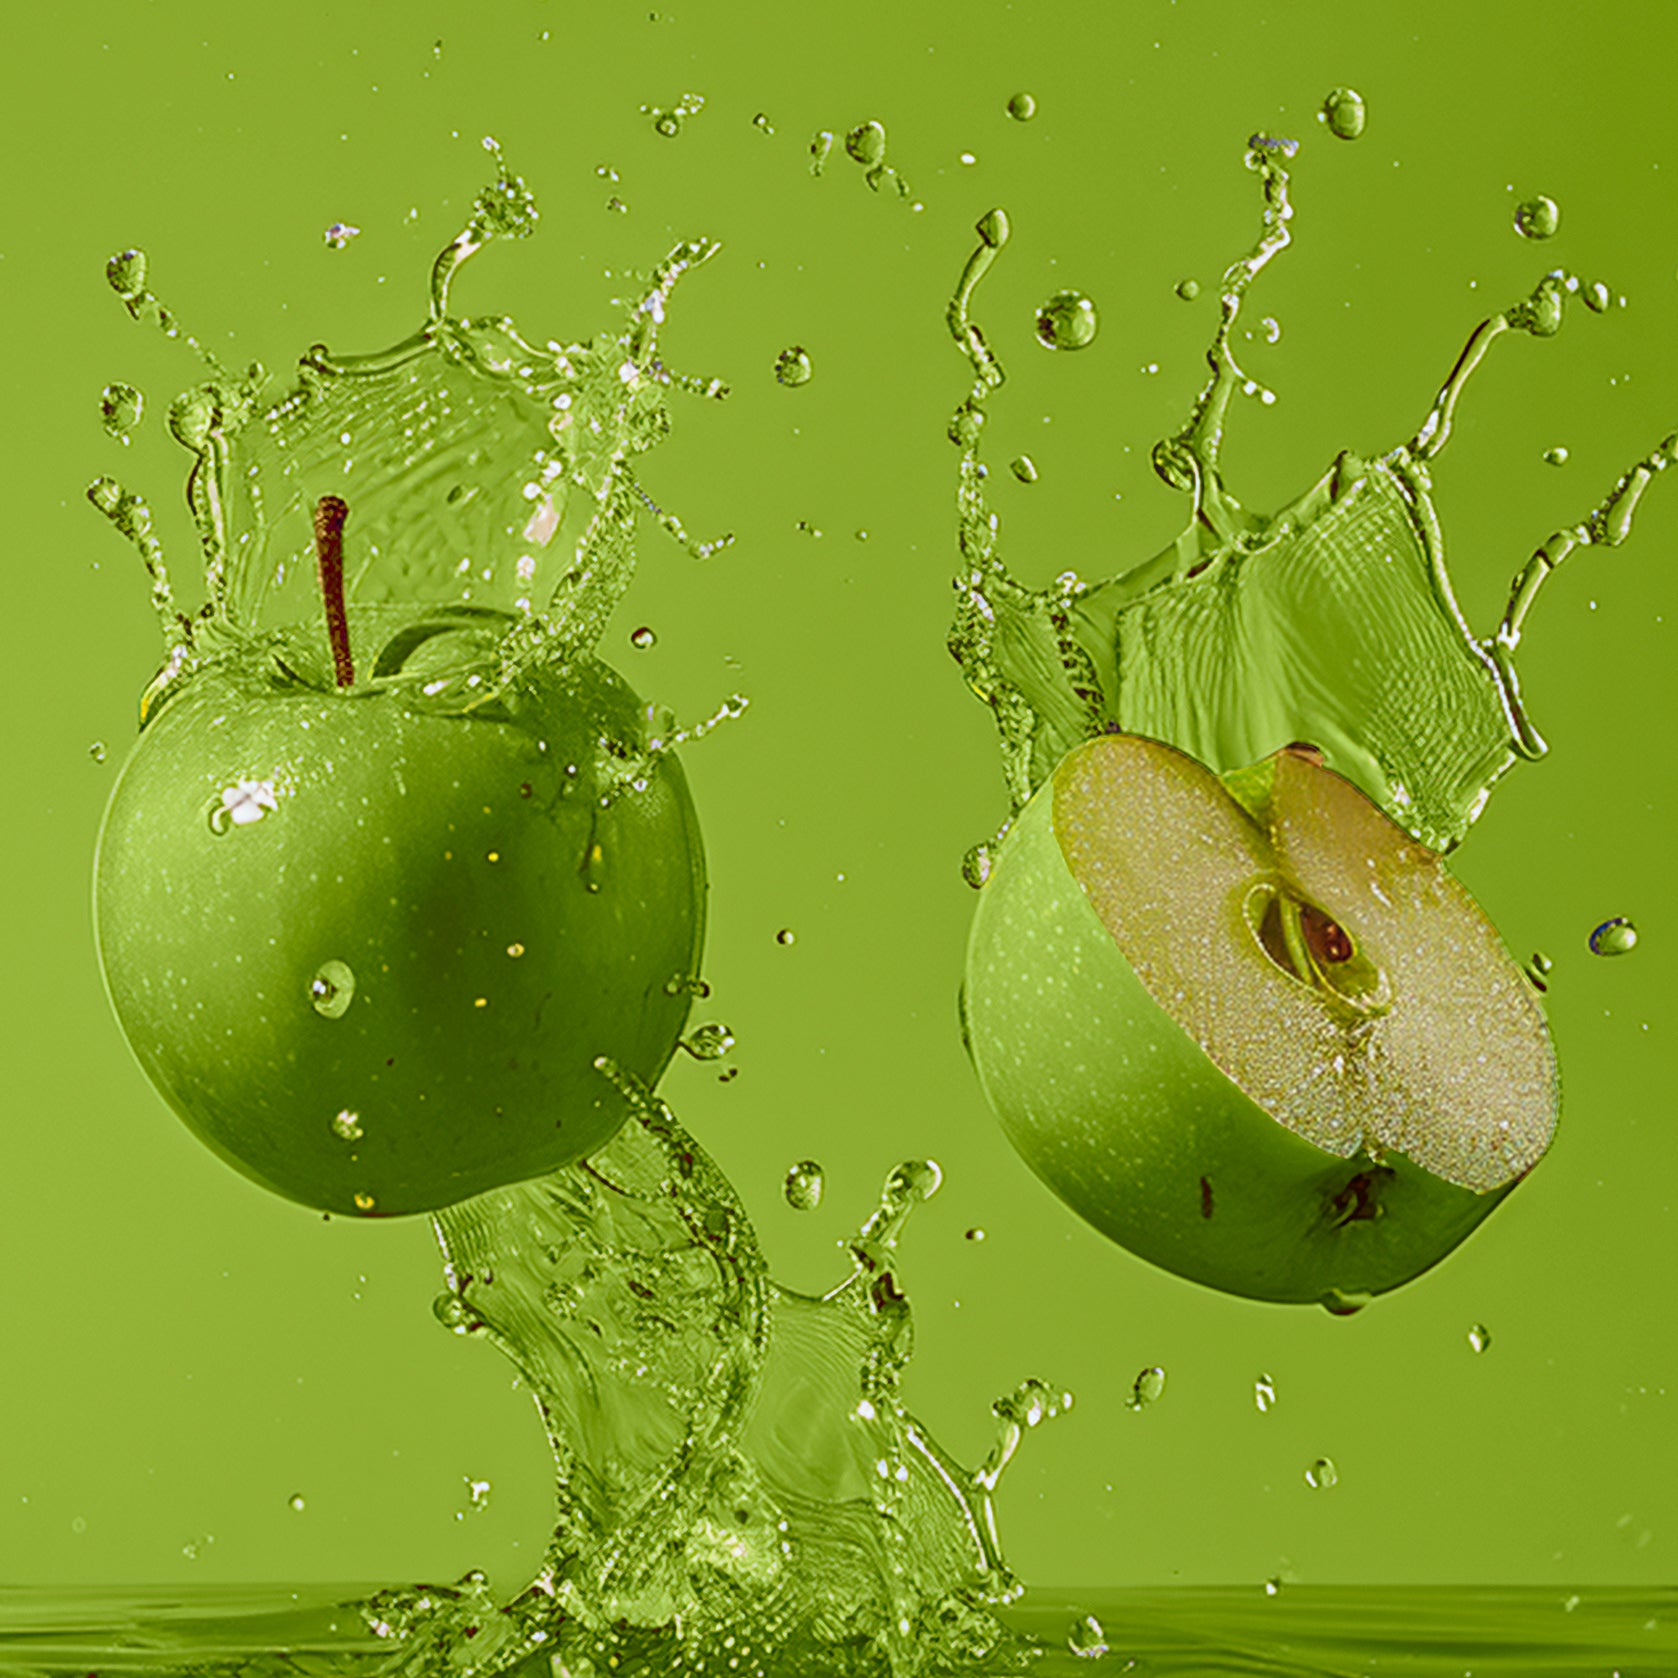 Accord de pommes verte. Photographie de deux pommes vertes, l'une entière et l'autre coupée en deux, avec des gouttelettes d'eau suggérant de la fraîcheur du fruit. 